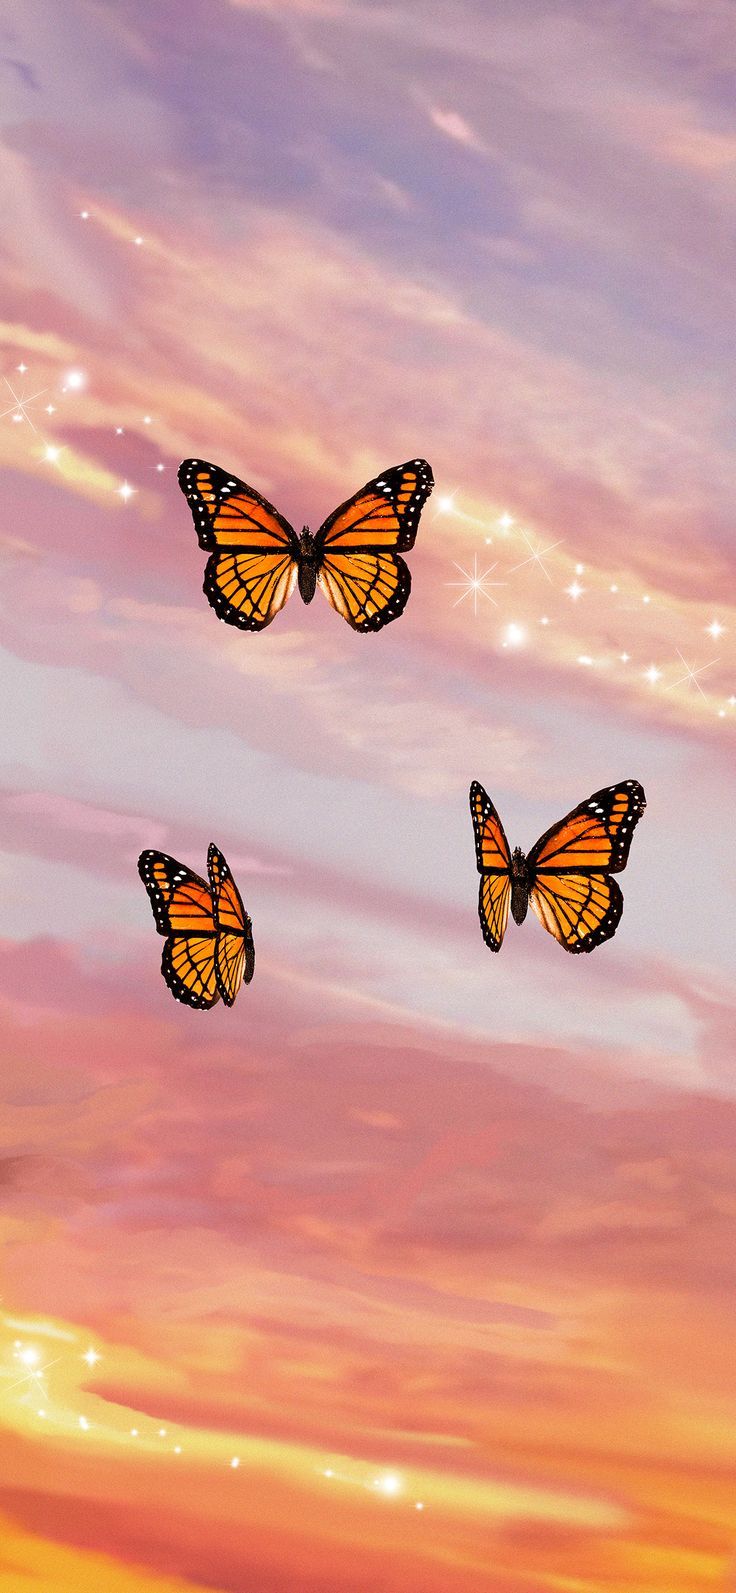  Blumen Und Schmetterlinge Hintergrundbild 736x1593. Butterfly Sunset Aesthetic iPhone Case by trajeado14. Hintergrund iphone, Blumen hintergrund iphone, Schmetterling hintergrund iphone